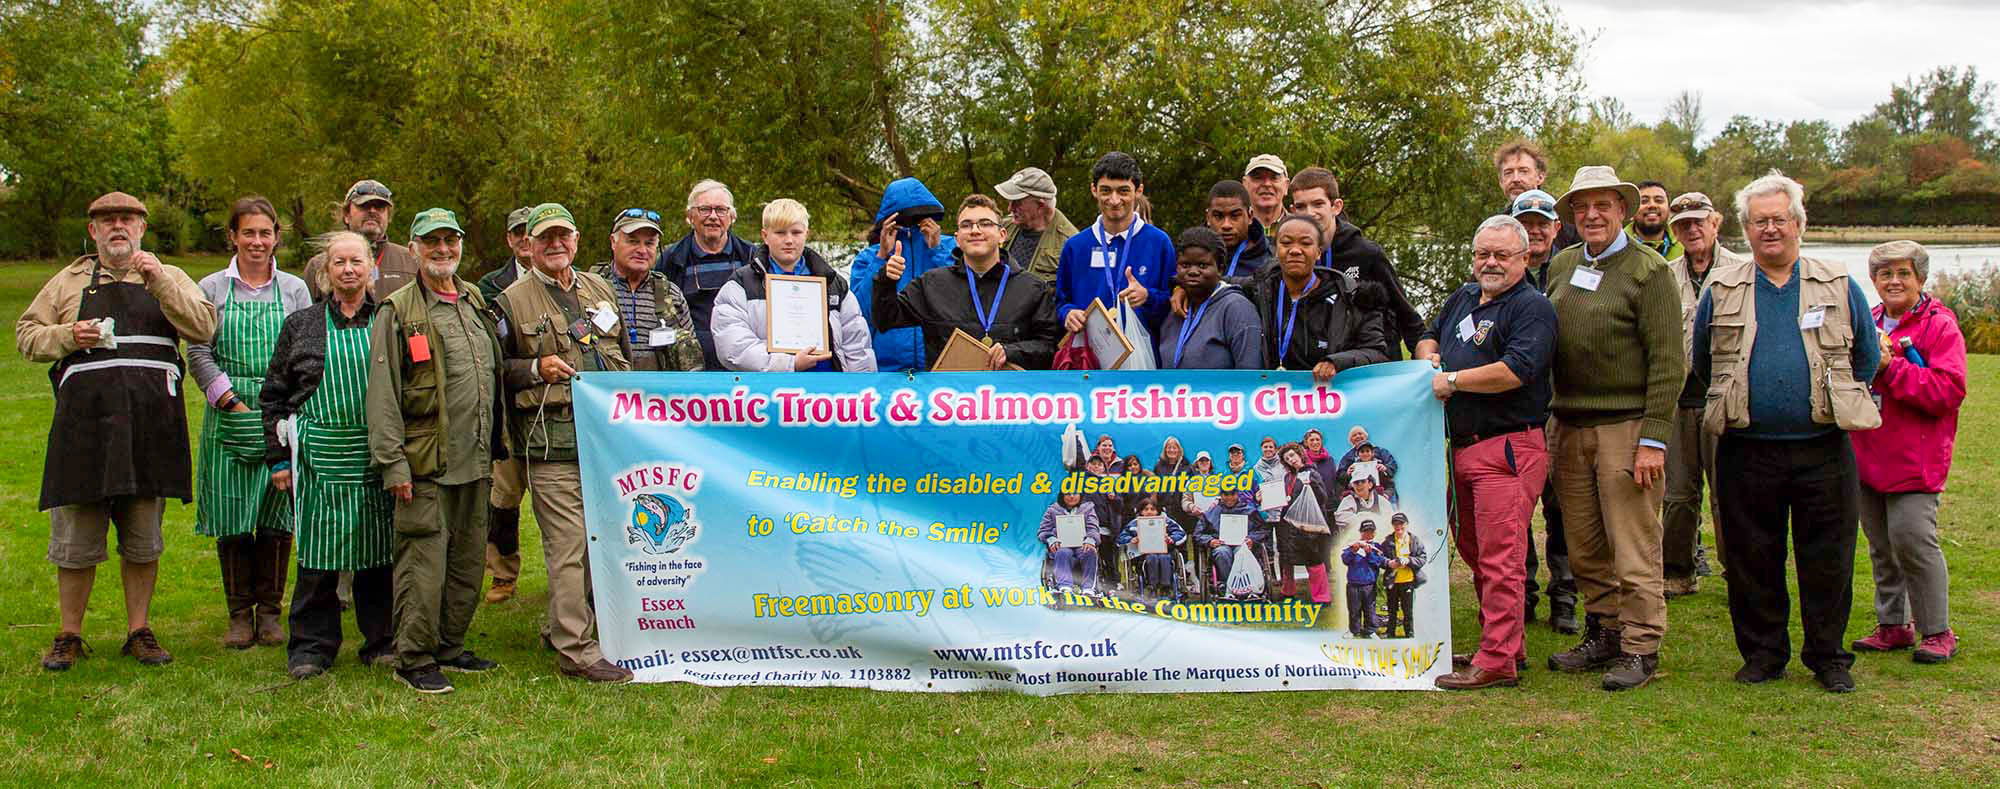 Masonic Trout & Salmon Fishing Charity Chigboro group